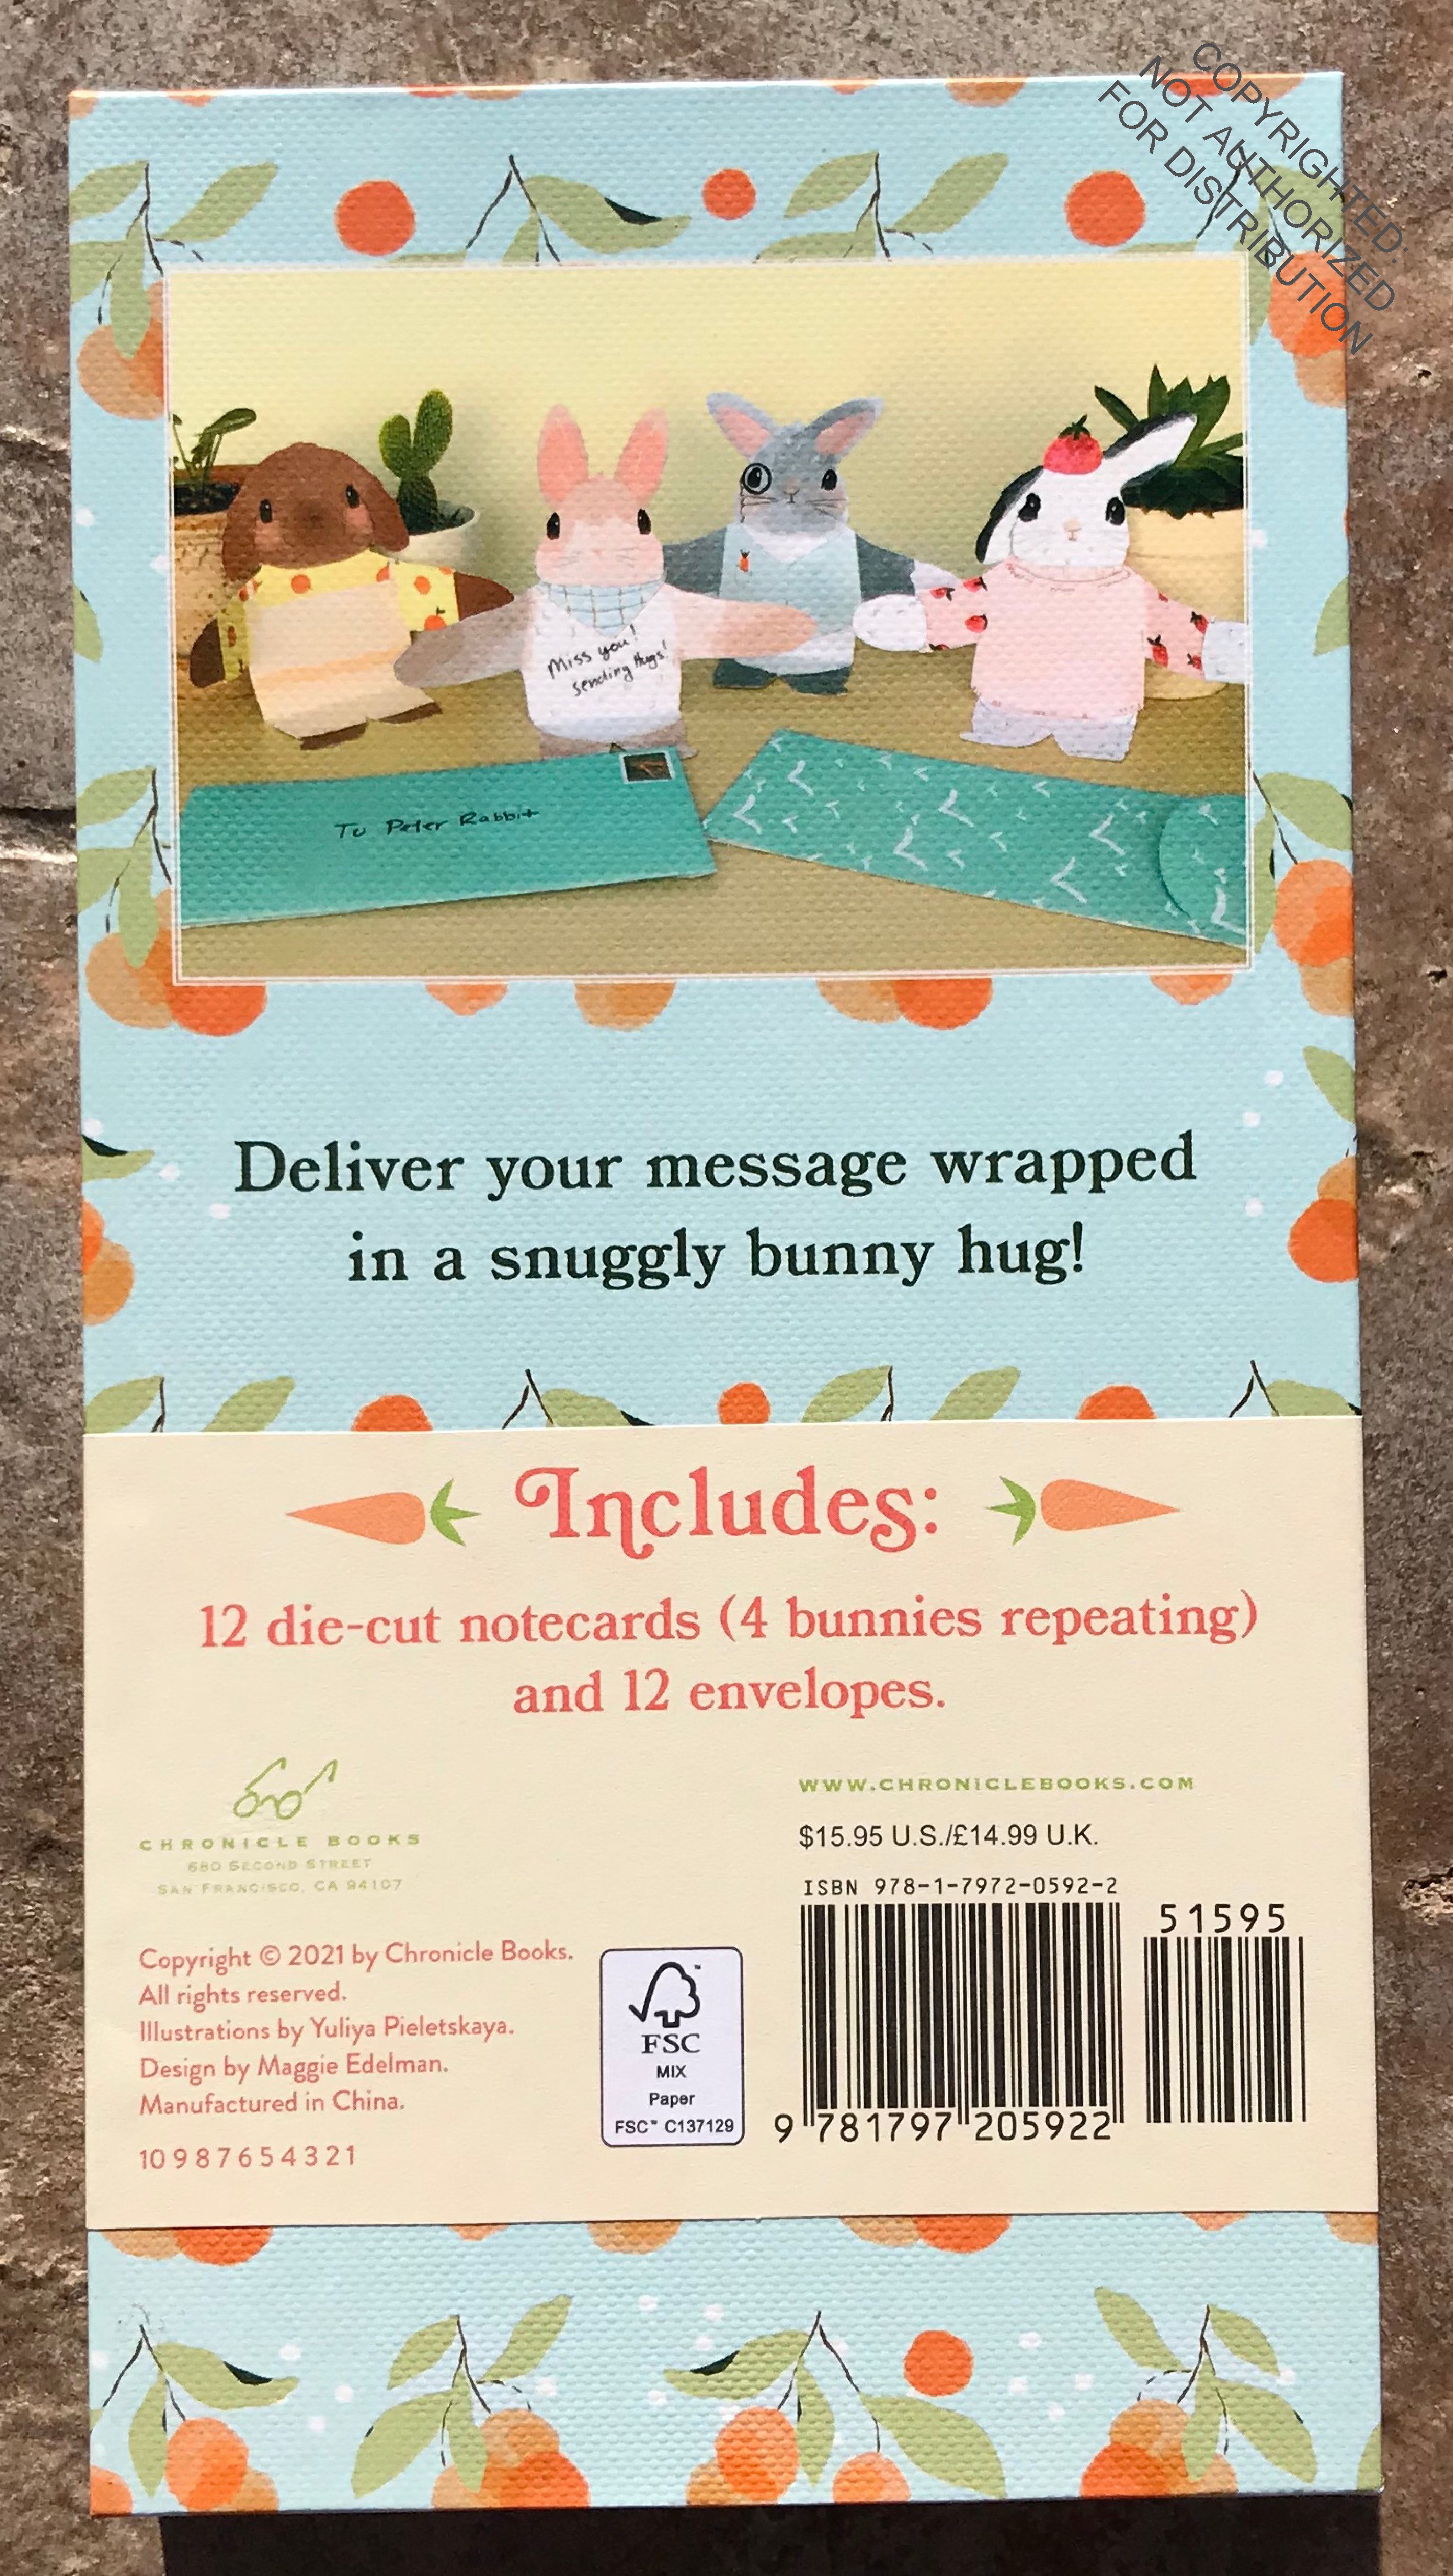 Snuggle Bunnies Notecards